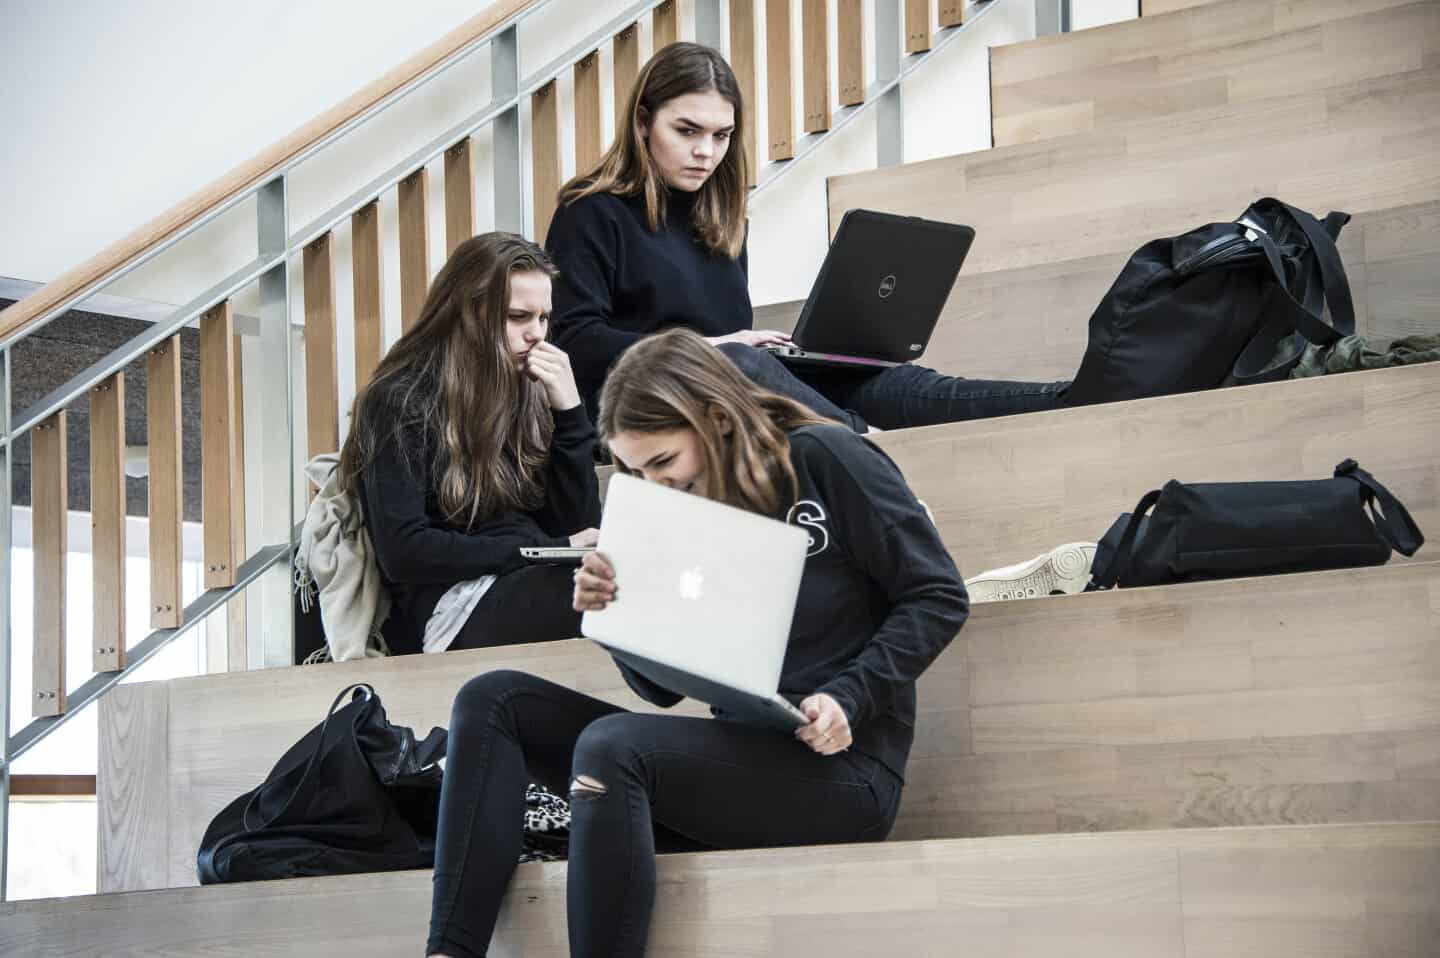 International klasse på vej til Nørre Aaby: Elever skal kigge ud verden | frdb.dk